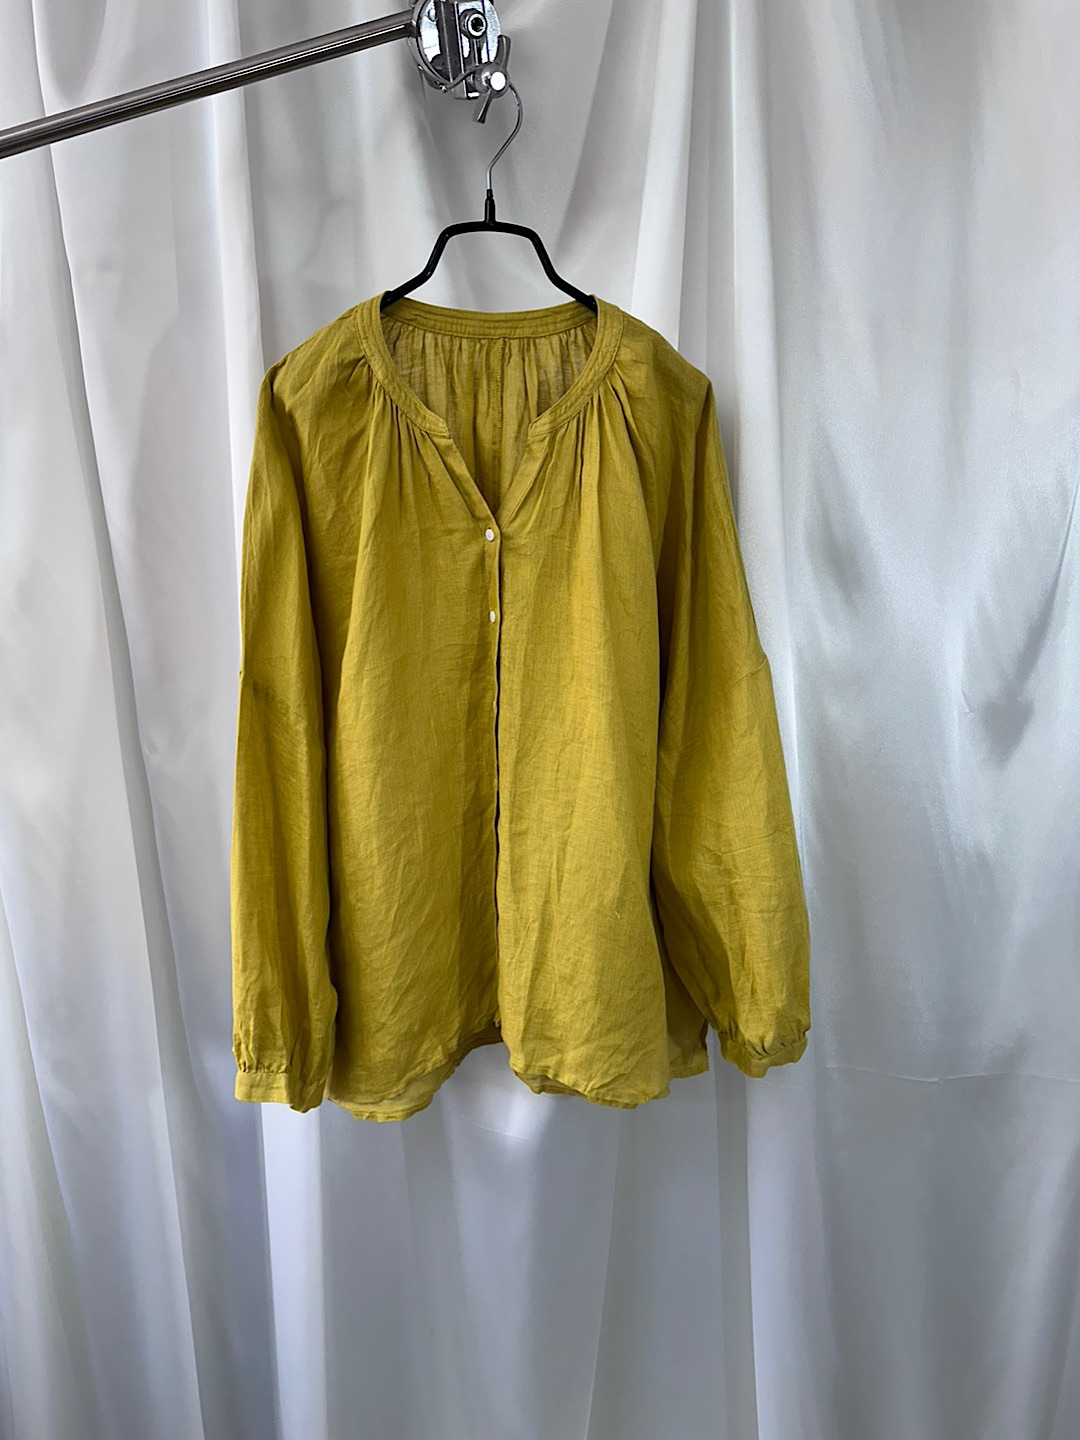 vintage linen blouse (linen 100%)